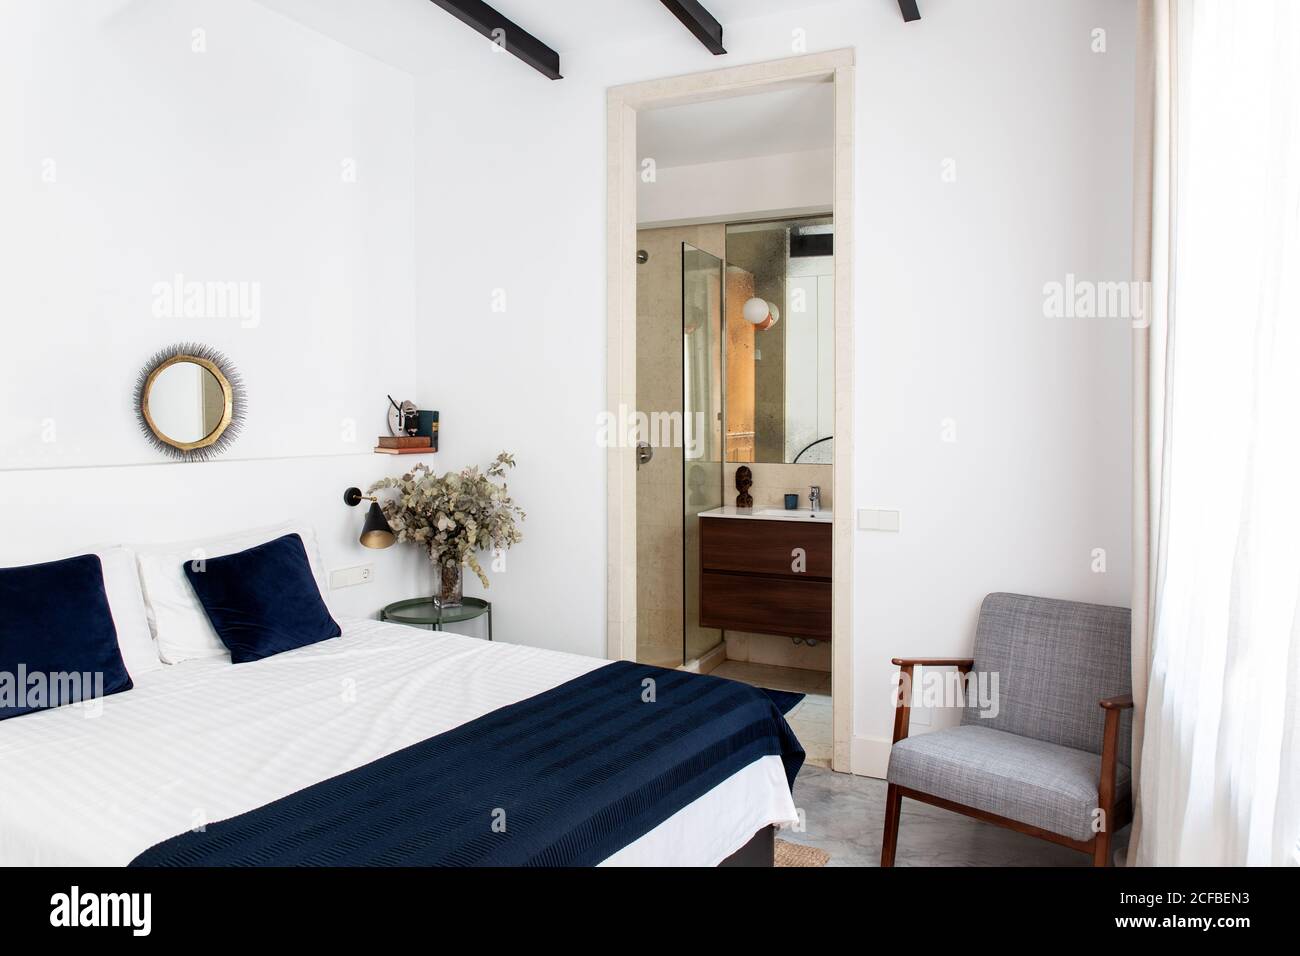 Komfortables Bett mit weißer und blauer Bettdecke und weichem Sessel Befindet sich in der Nähe von Bad Tür in gemütlichen Schlafzimmer der modernen Wohnung Stockfoto